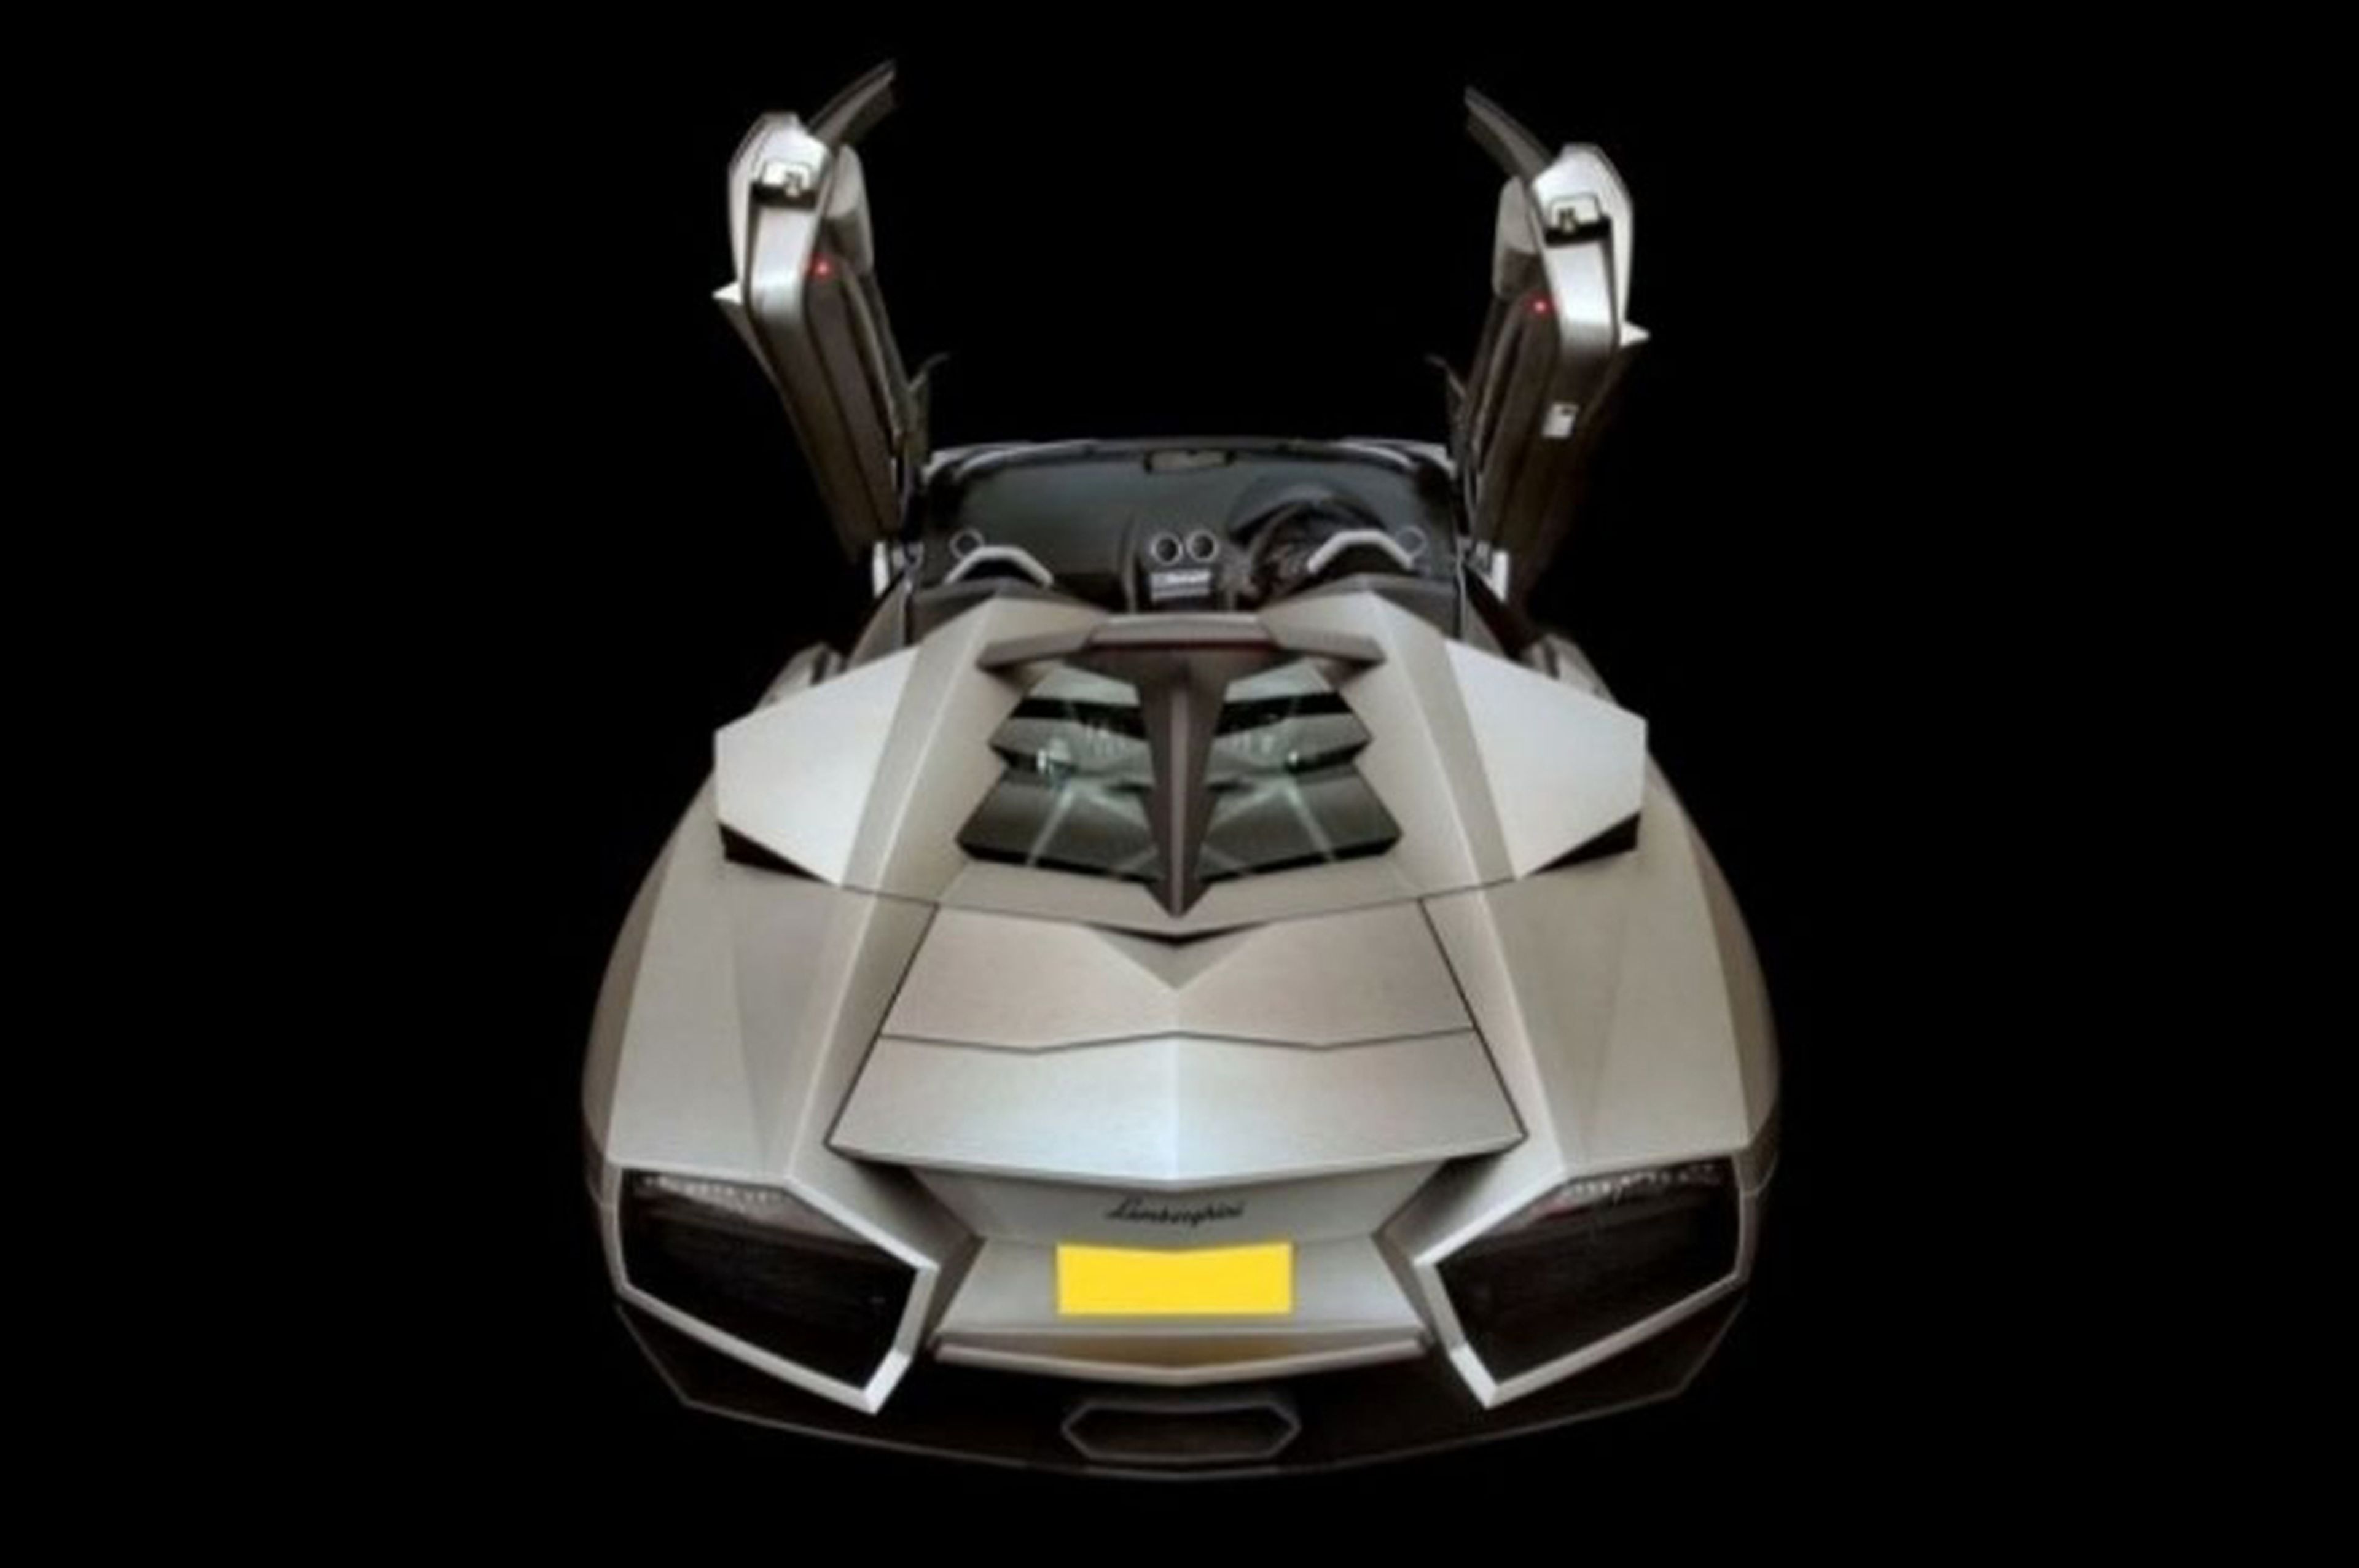 Lamborghini Reventon (2)